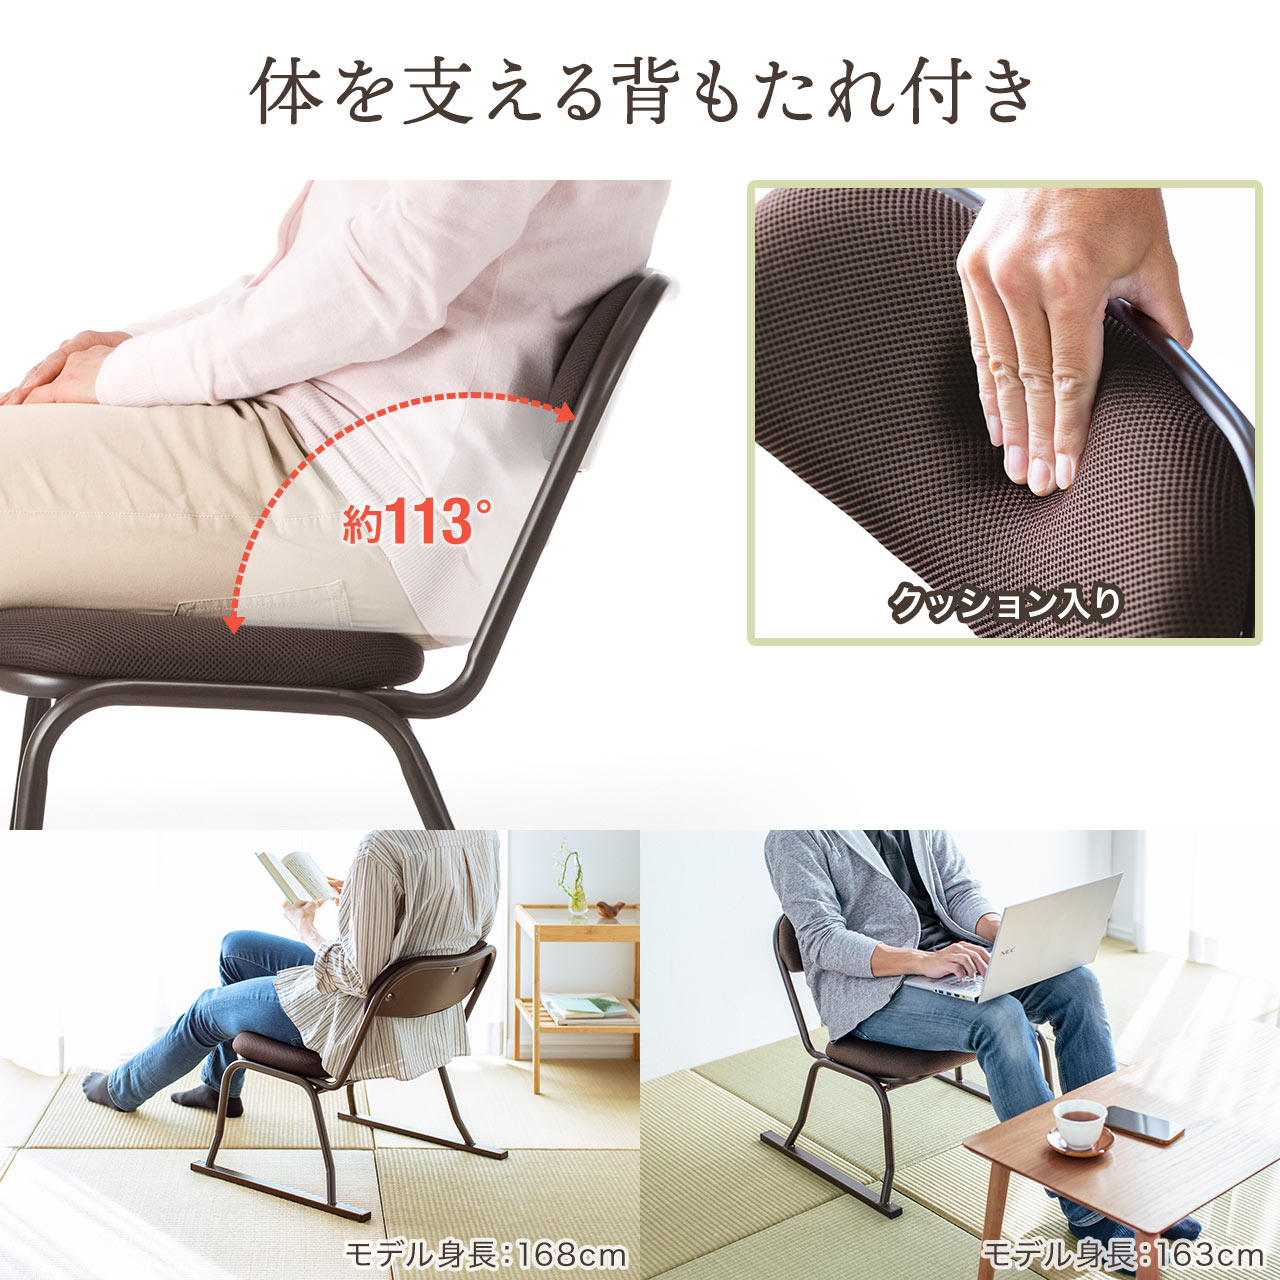 座敷椅子 高座椅子 和室 腰痛対策 スタッキング可能 4脚セット